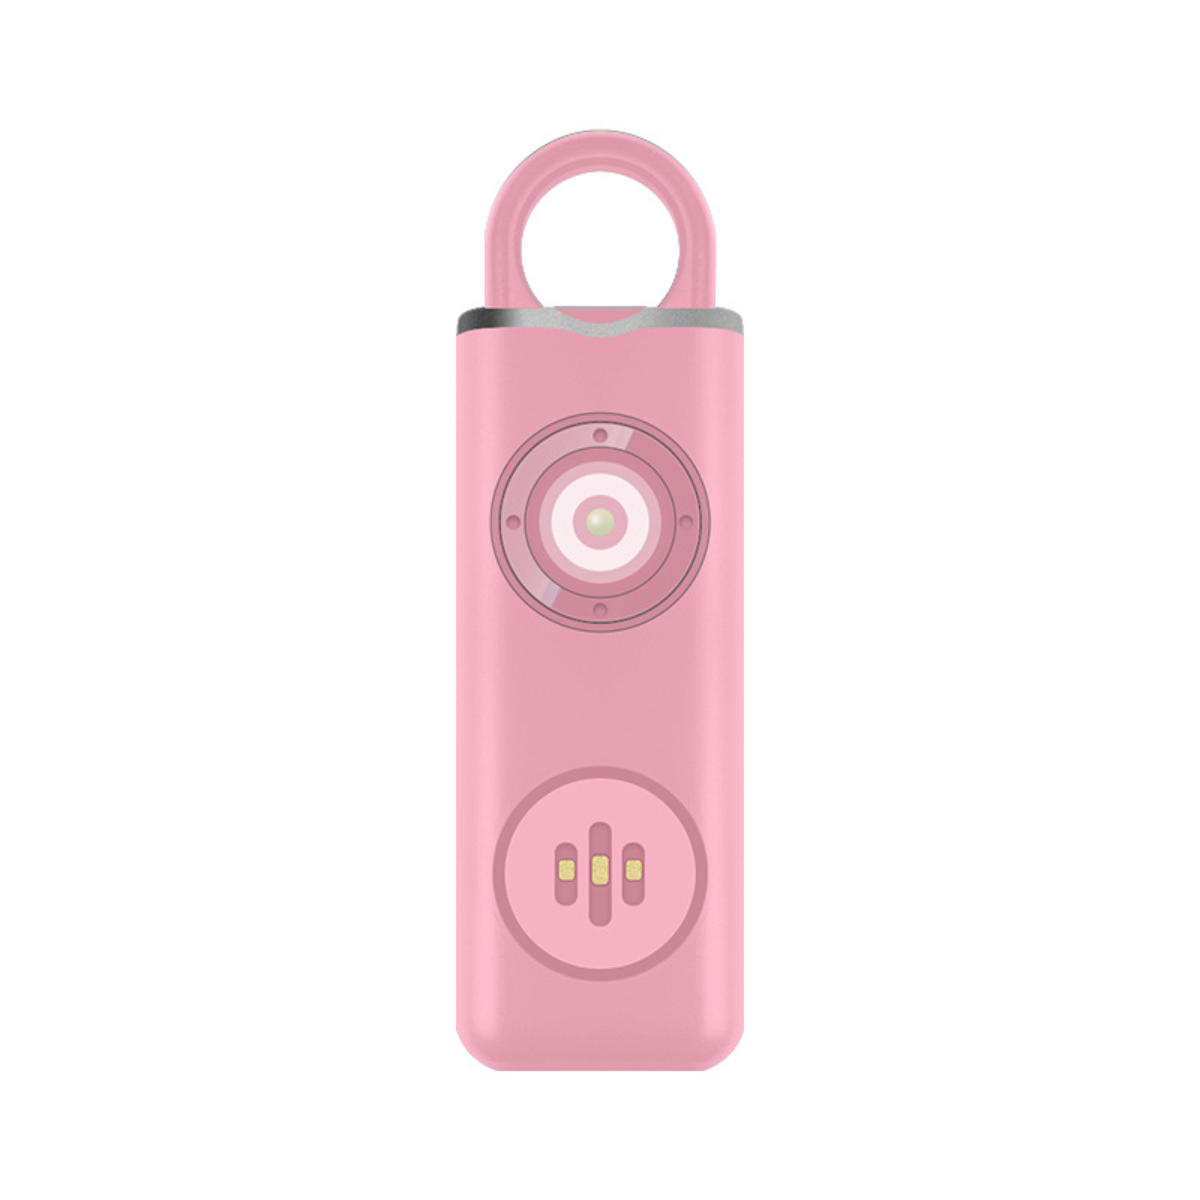 Zyklus Alarm LACAMAX wiederaufladbarer Schlüsselanhänger - LED-beleuchtet, Pinker Body Alarme, Rosa